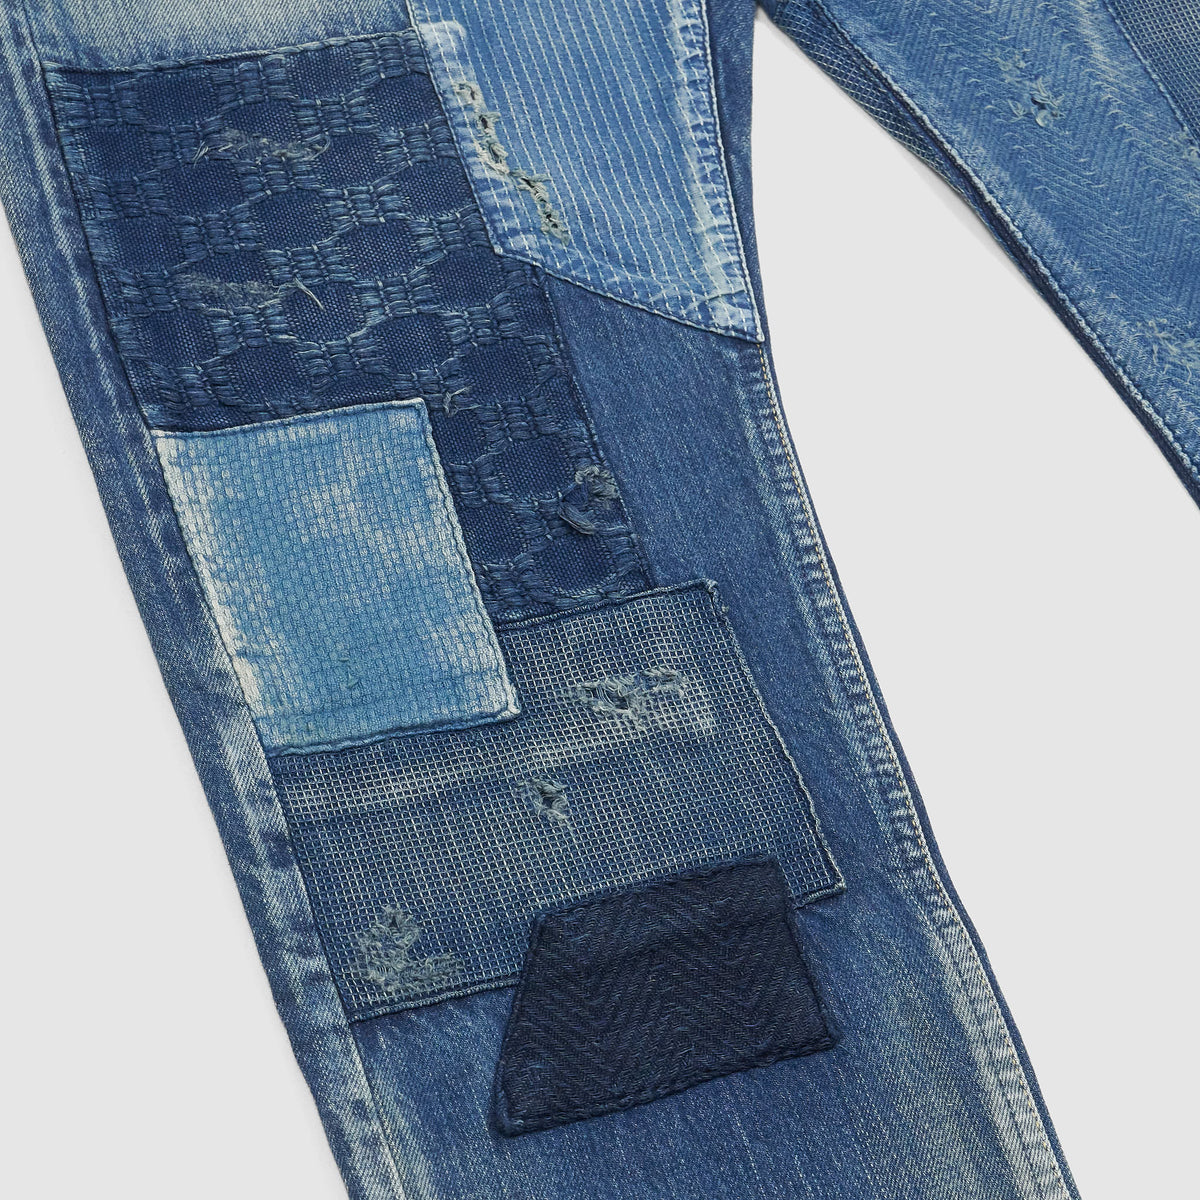 FDMTL Slim Fitted Three Year Wash Patchwork Denim Jeans